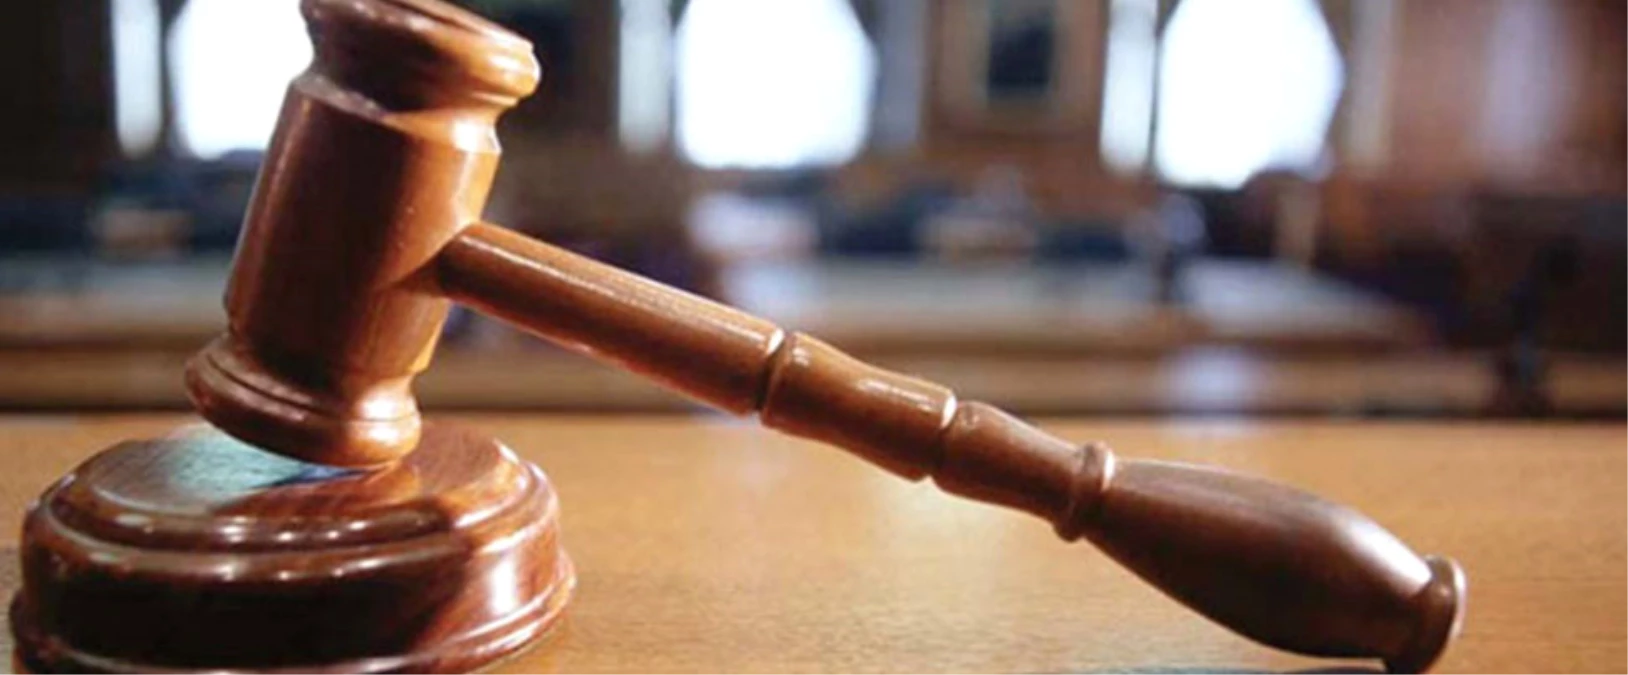 Ergenekon Davasında Savcı 113 Kişinin Beraatini İstedi